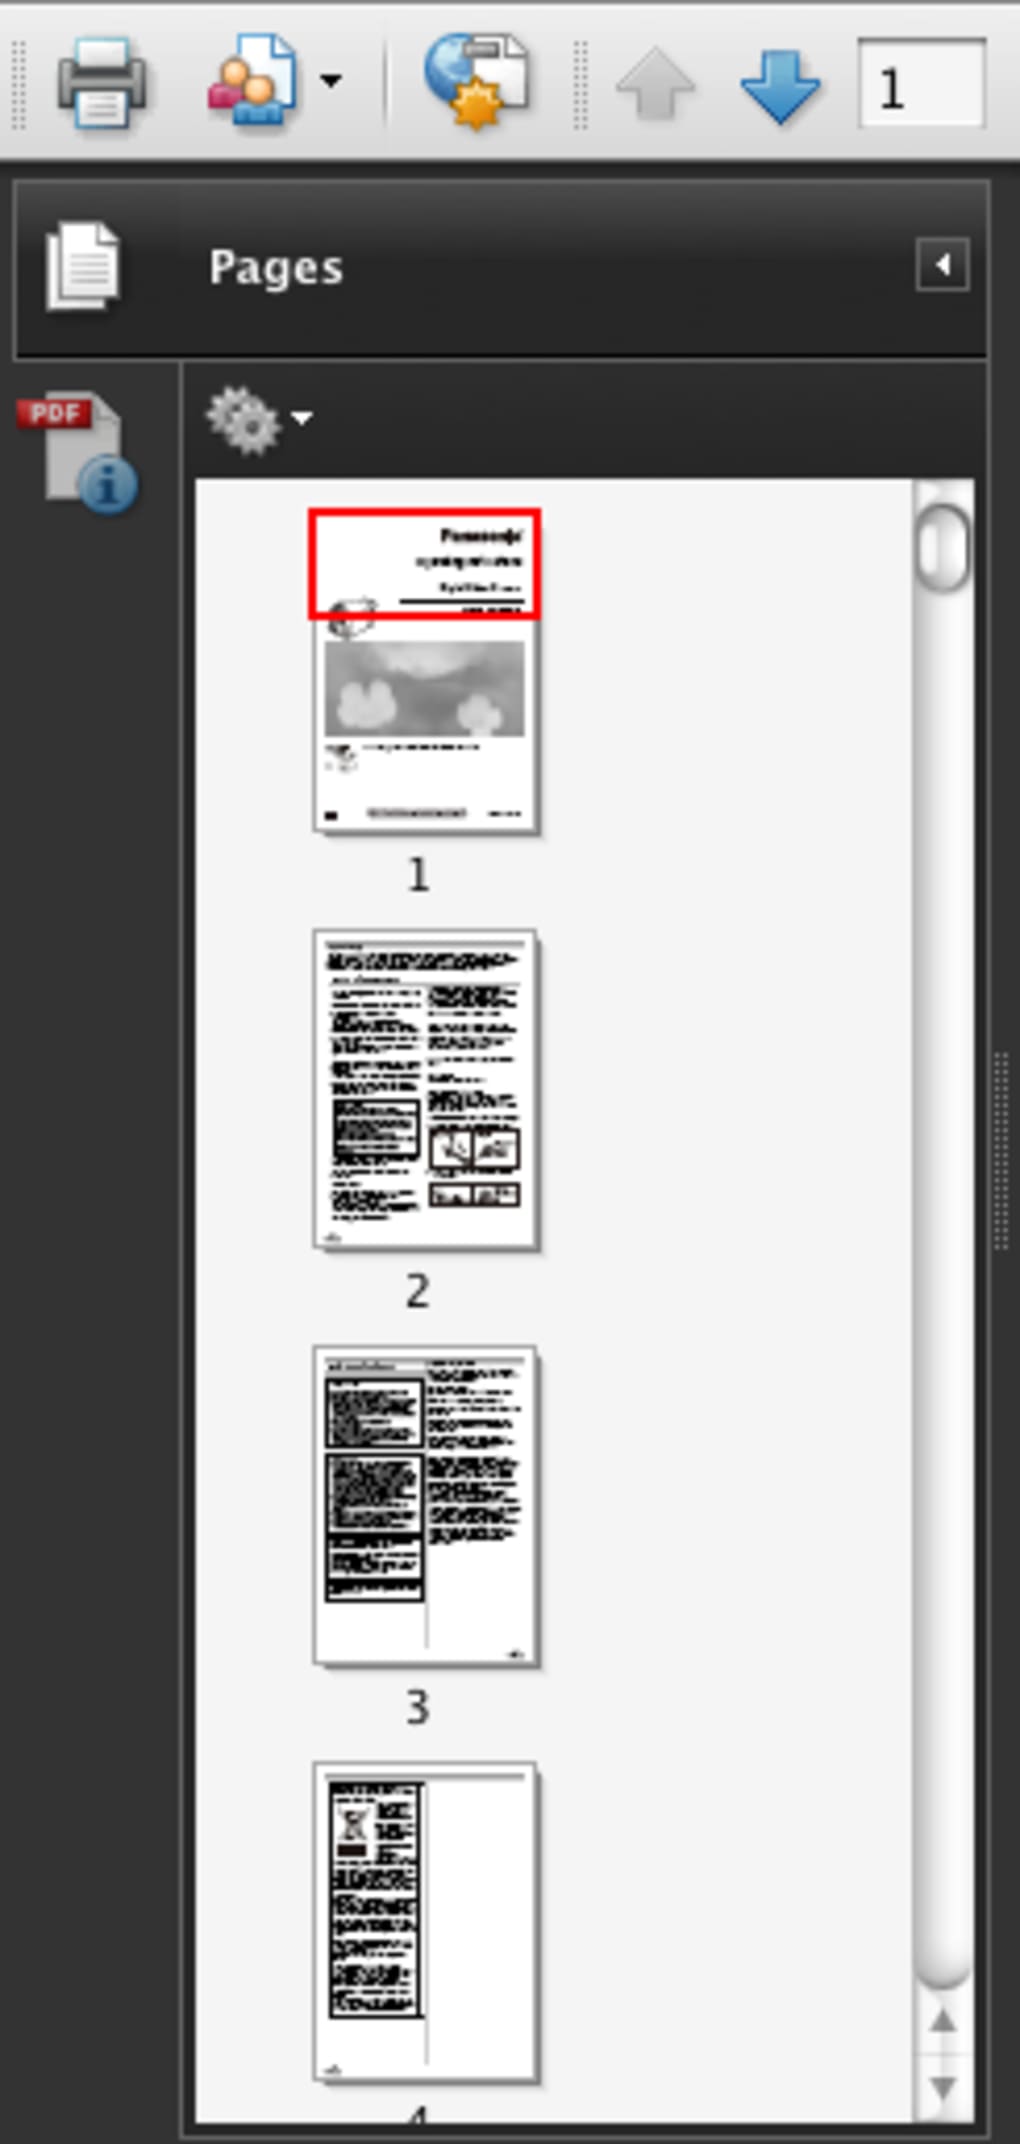 adobe acrobat pdf reader free download for mac